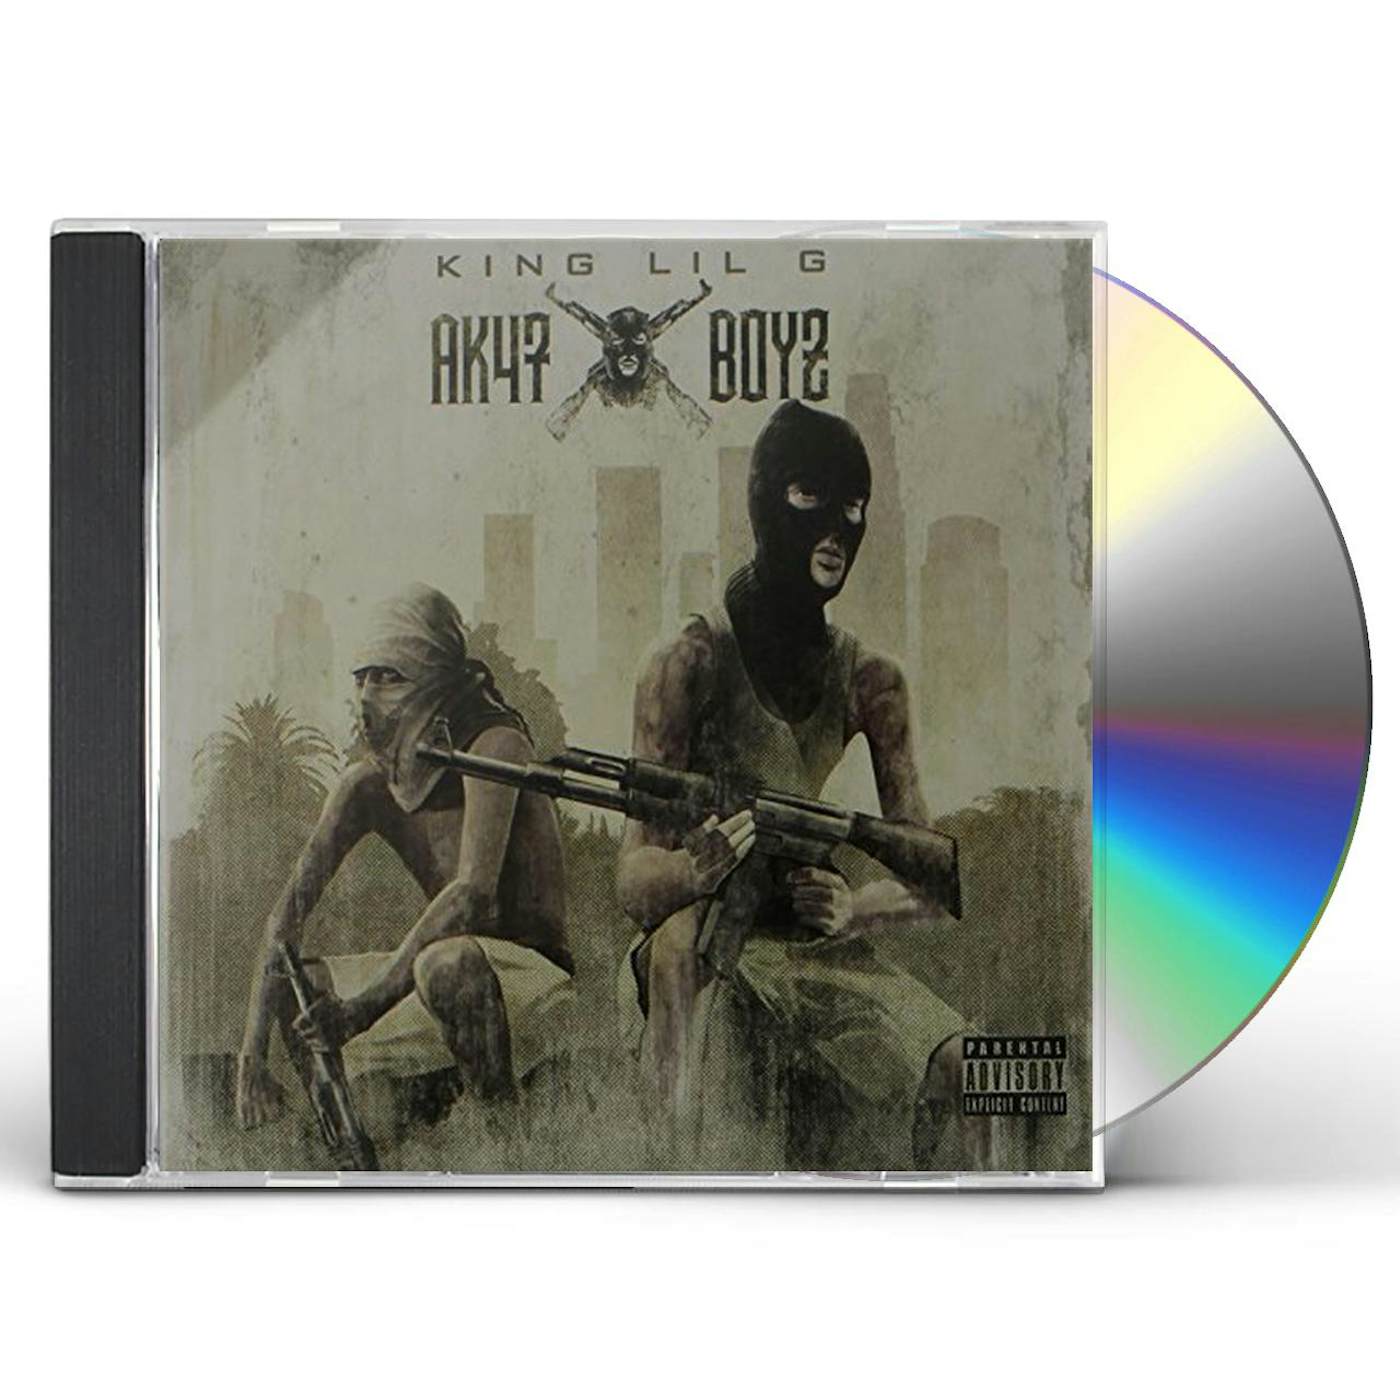 King Lil G AK47 BOYZ CD